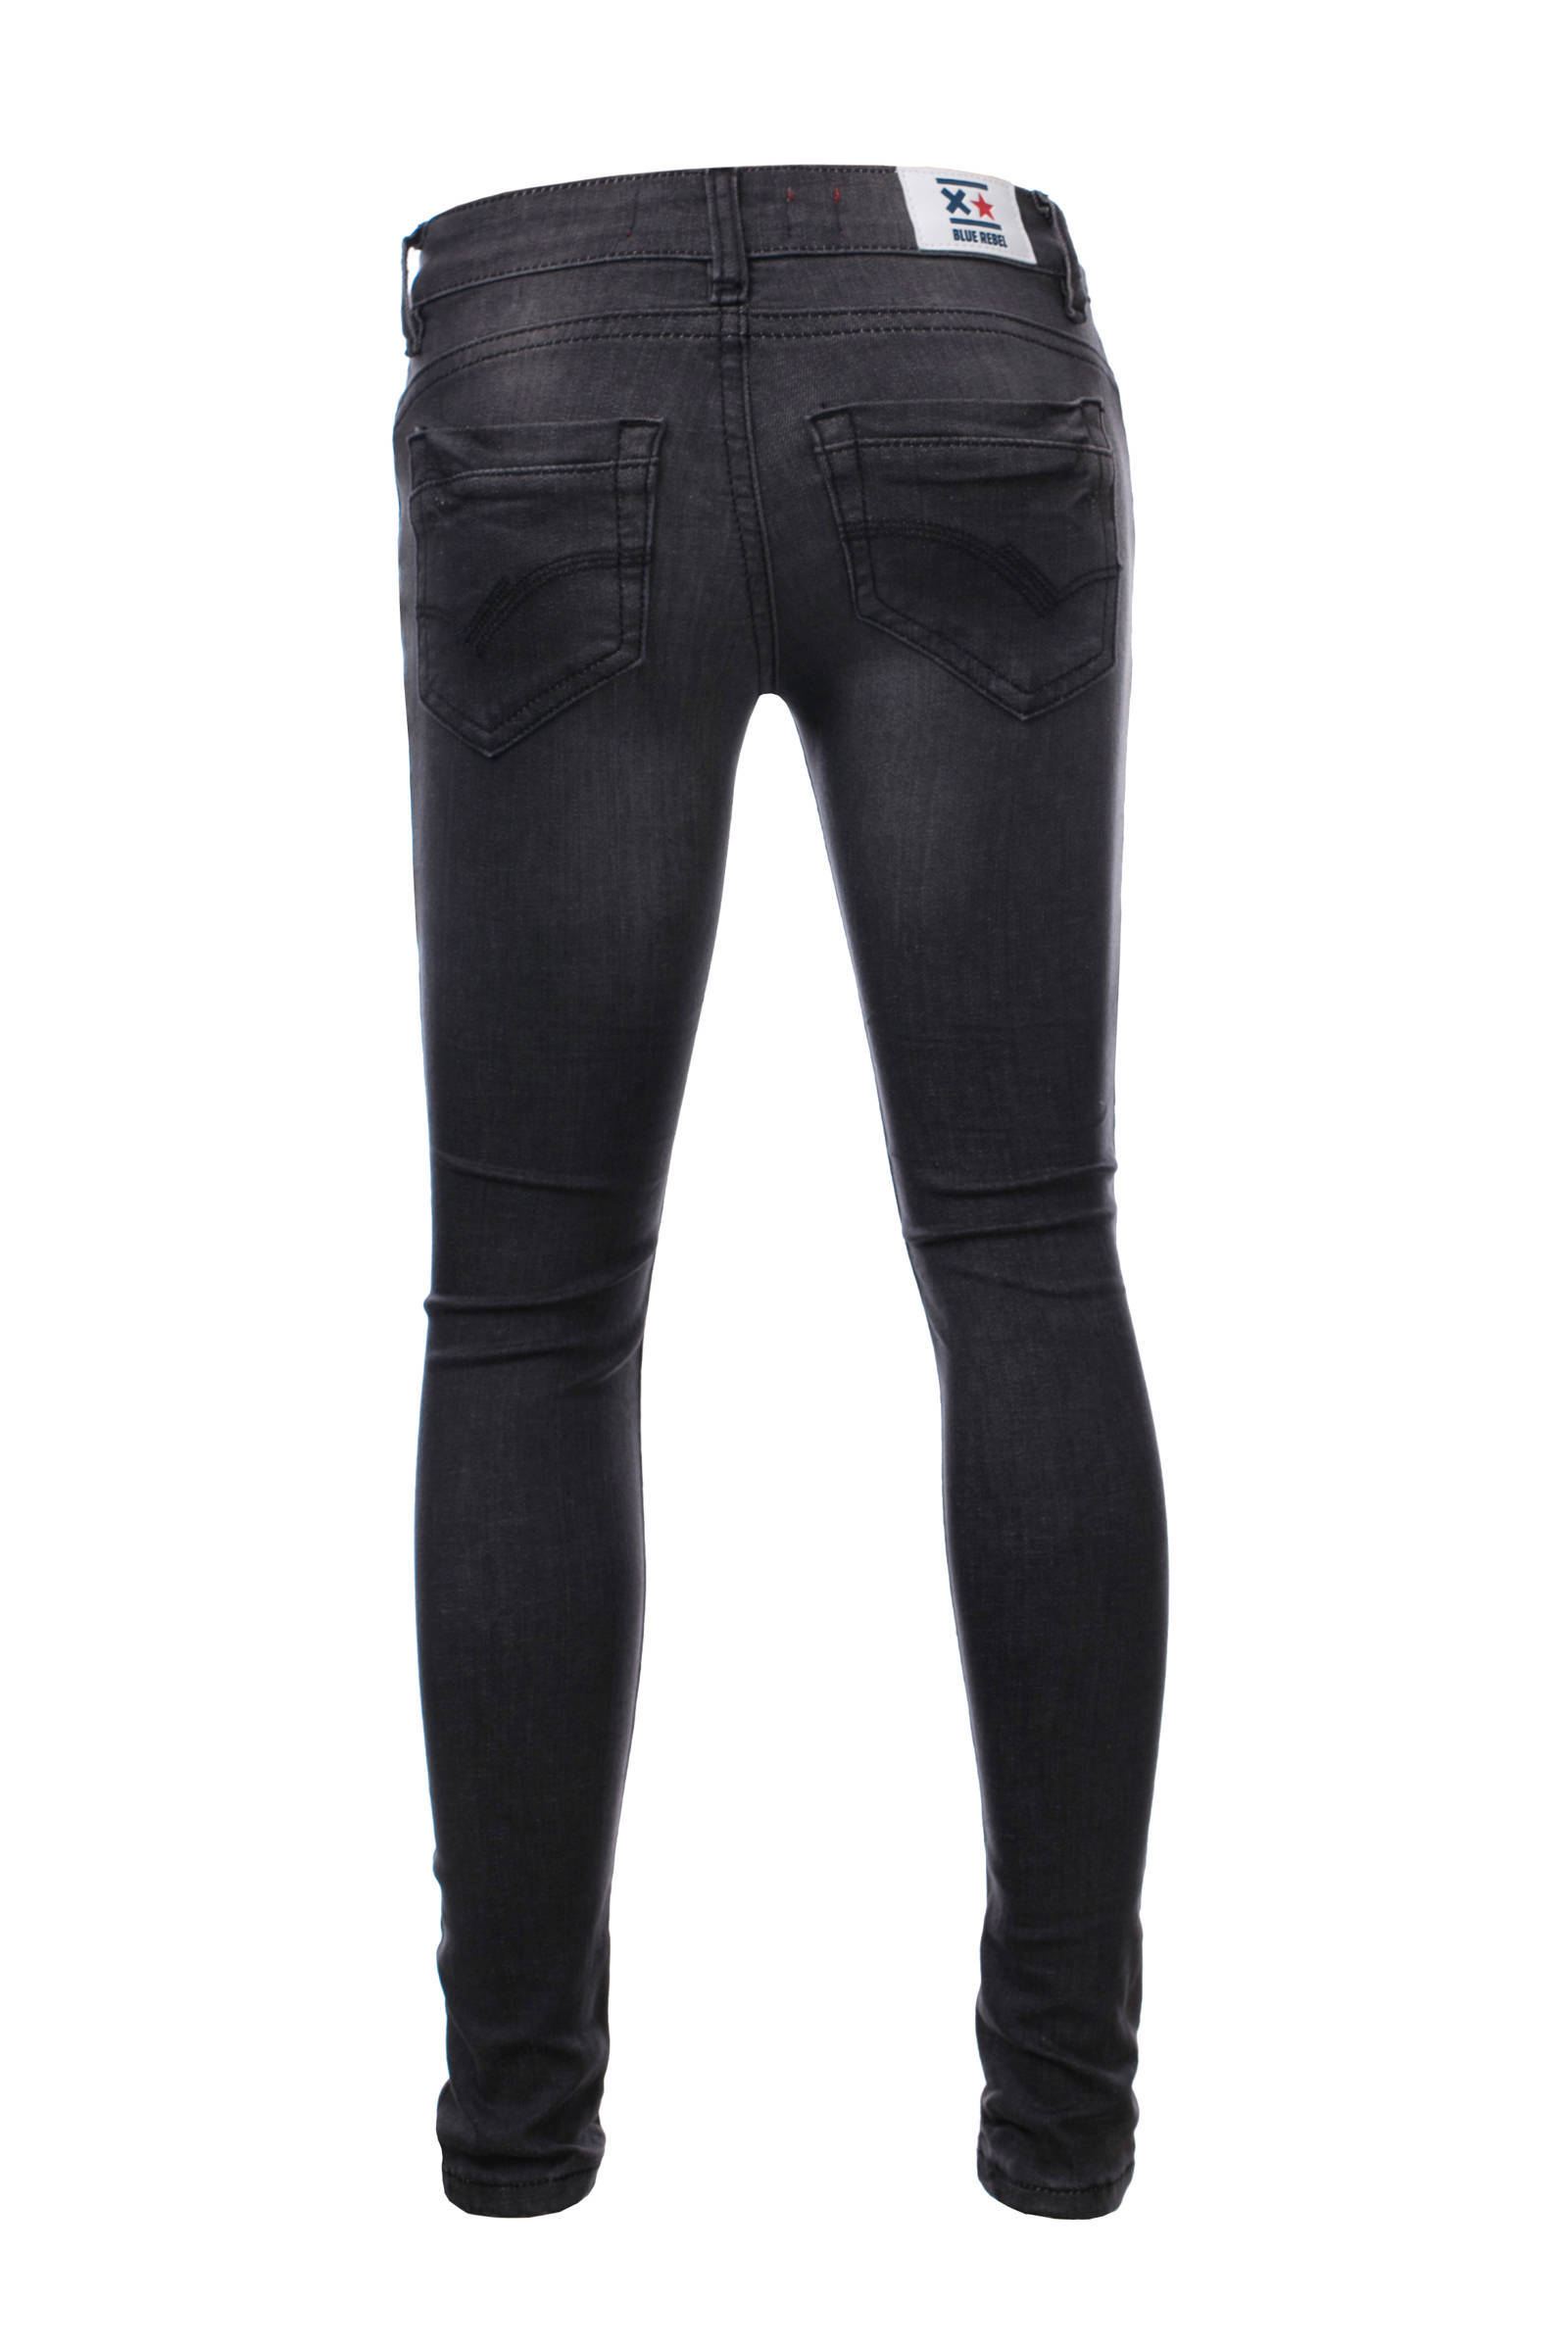 Ruwe olie Sluit een verzekering af eerste Blue Rebel - maat 158 - super skinny jeans Gold verwassen zwart (rock wash)  | DGM Outlet